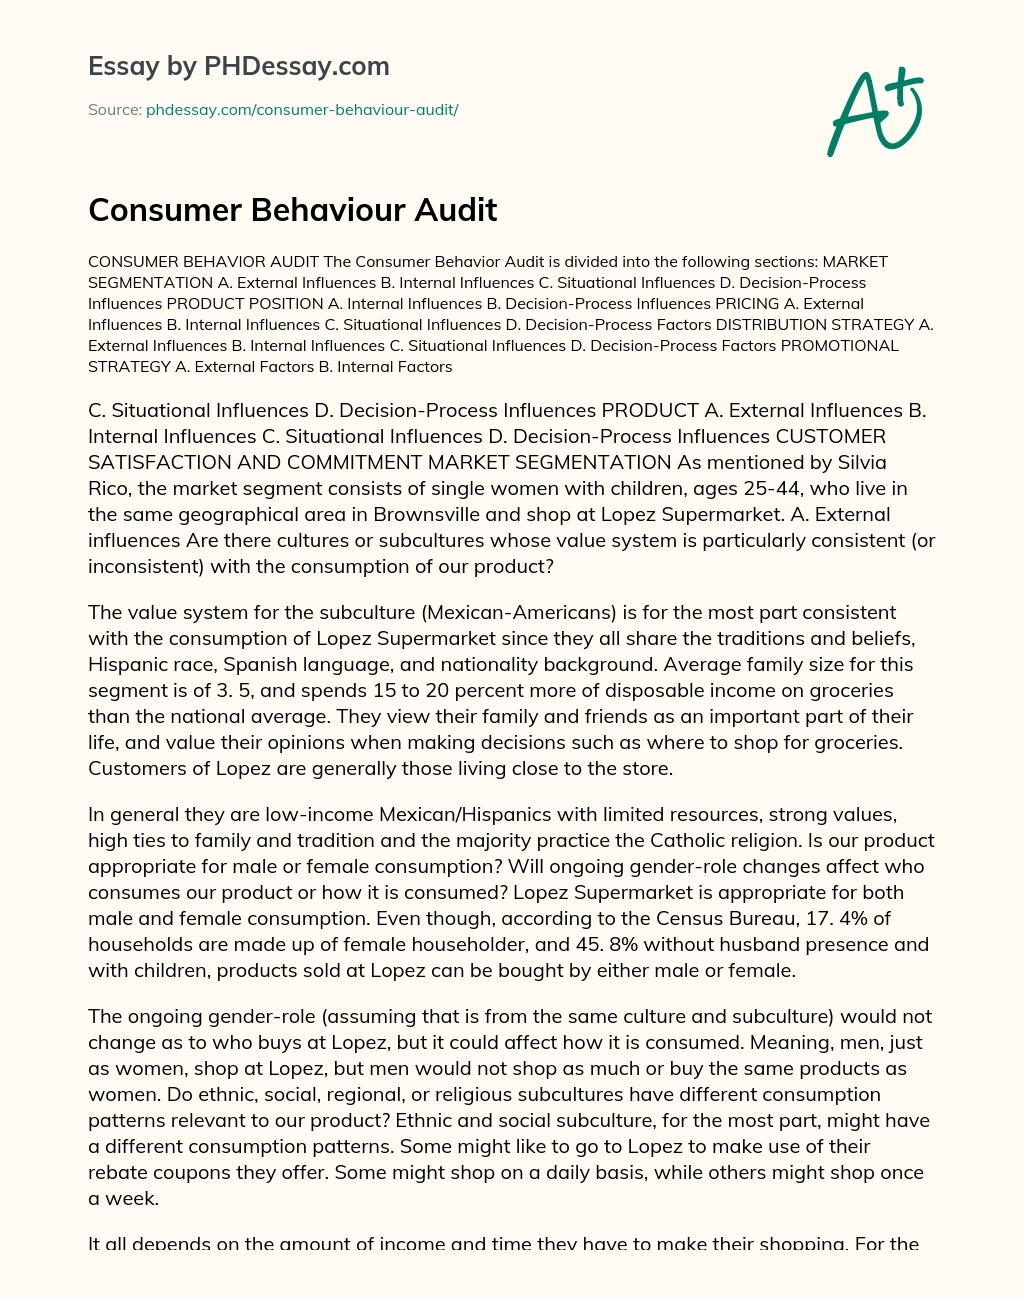 Consumer Behaviour Audit essay